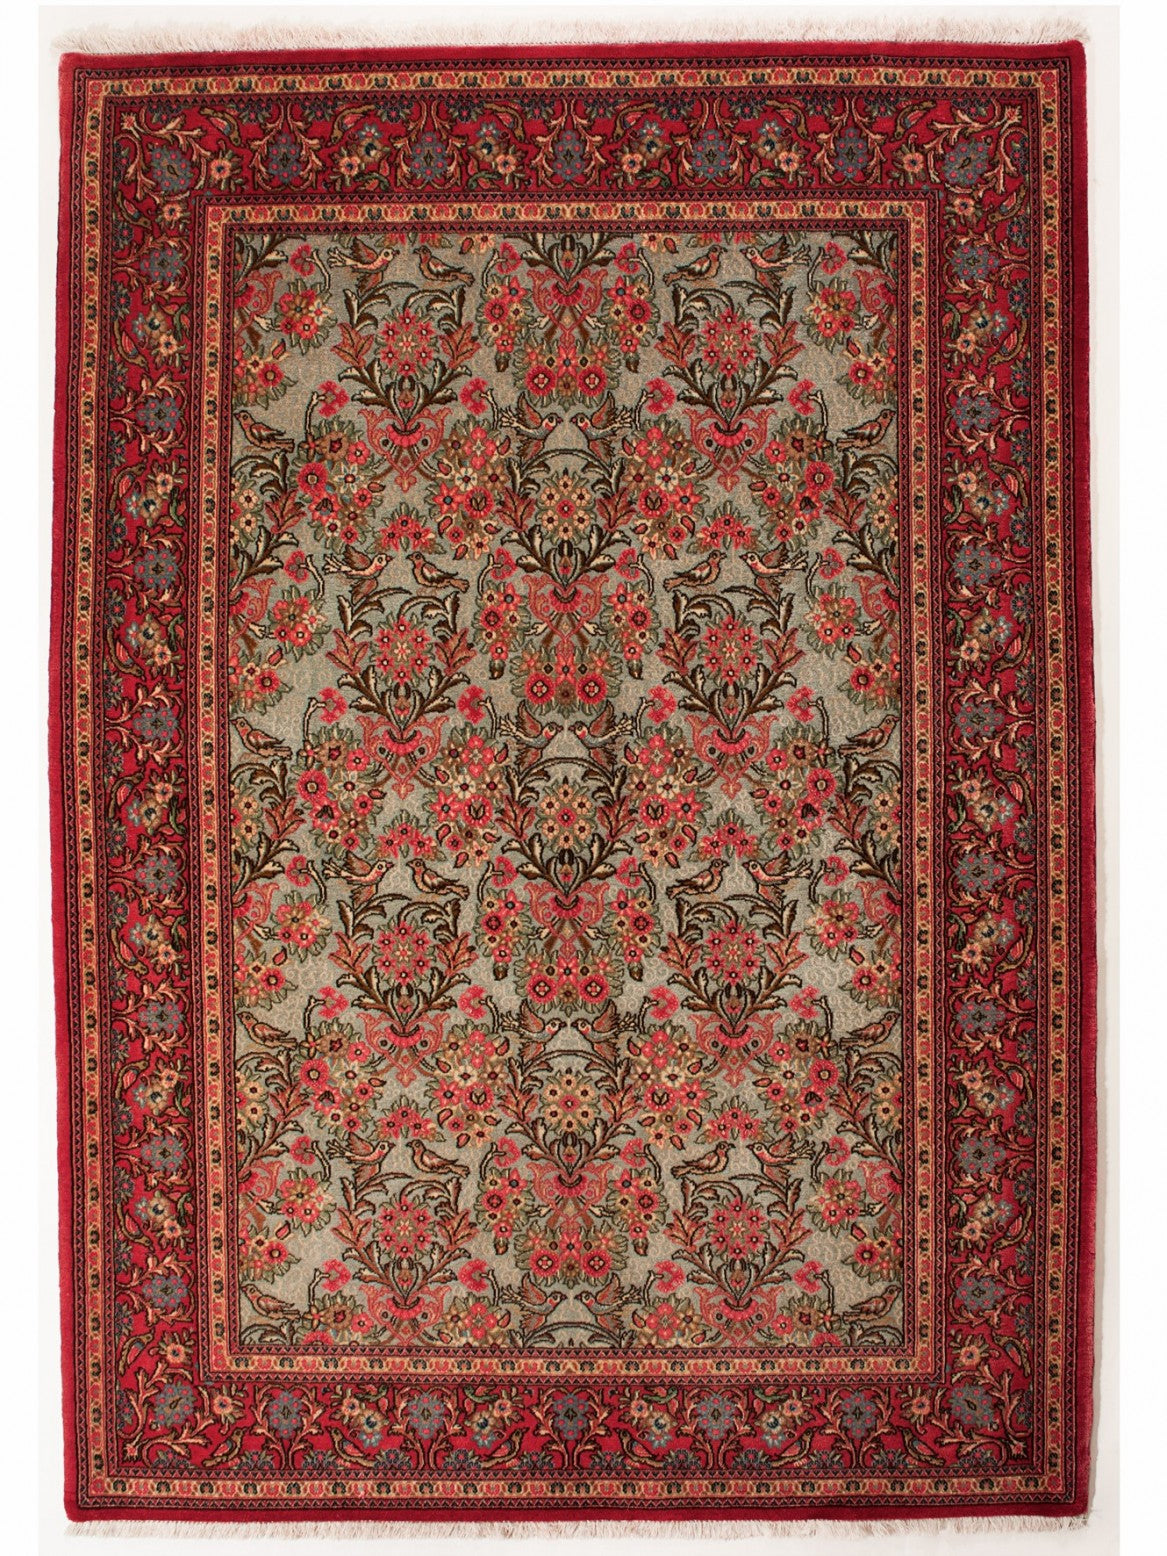 GHOUM IRAN 208 x 140 cm